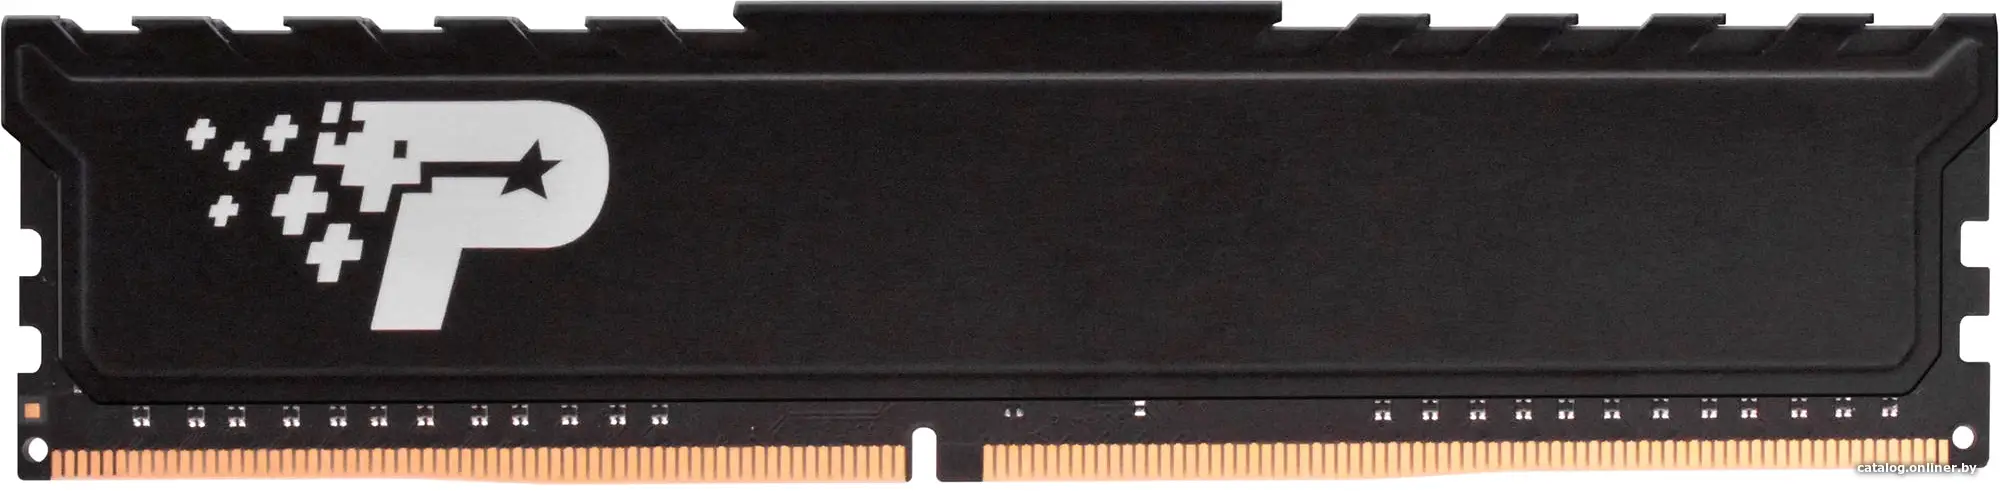 Купить Память DDR4 16Gb PC4-21300 Patriot Signature Premium PSP416G266681H1, цена, опт и розница